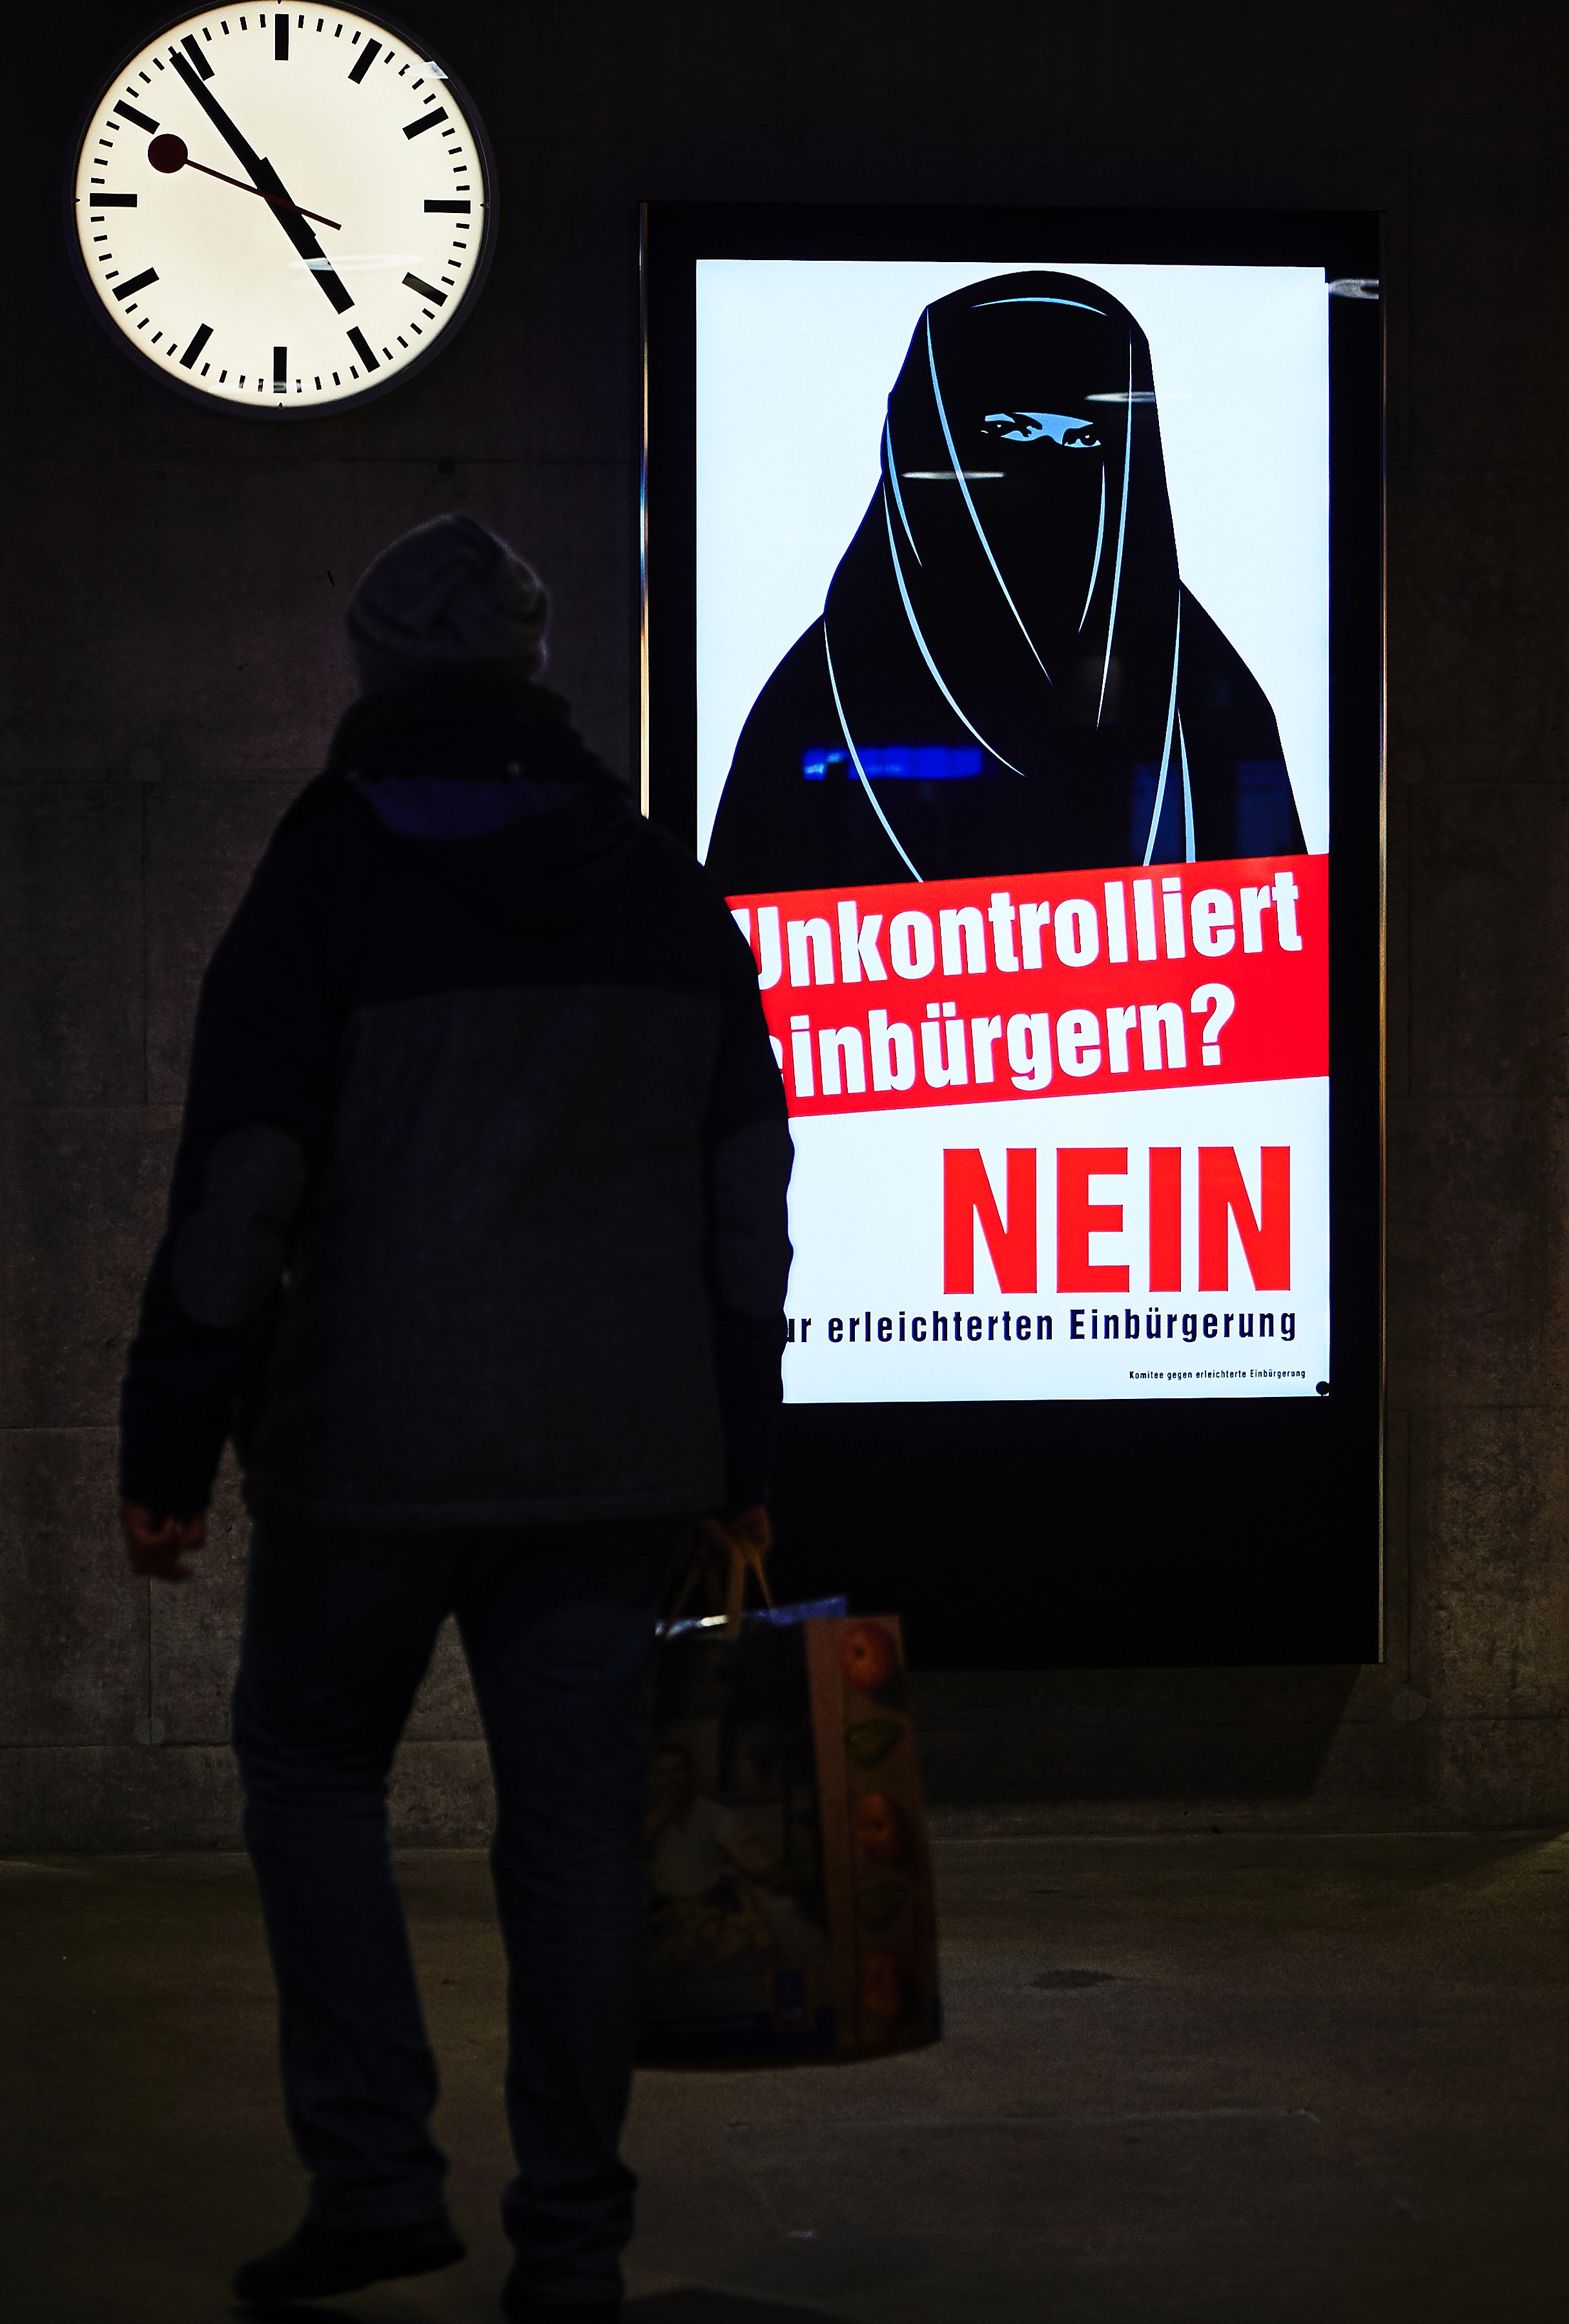 انتشار ملصقات ترفض التجنيس فى شوارع سويسرا